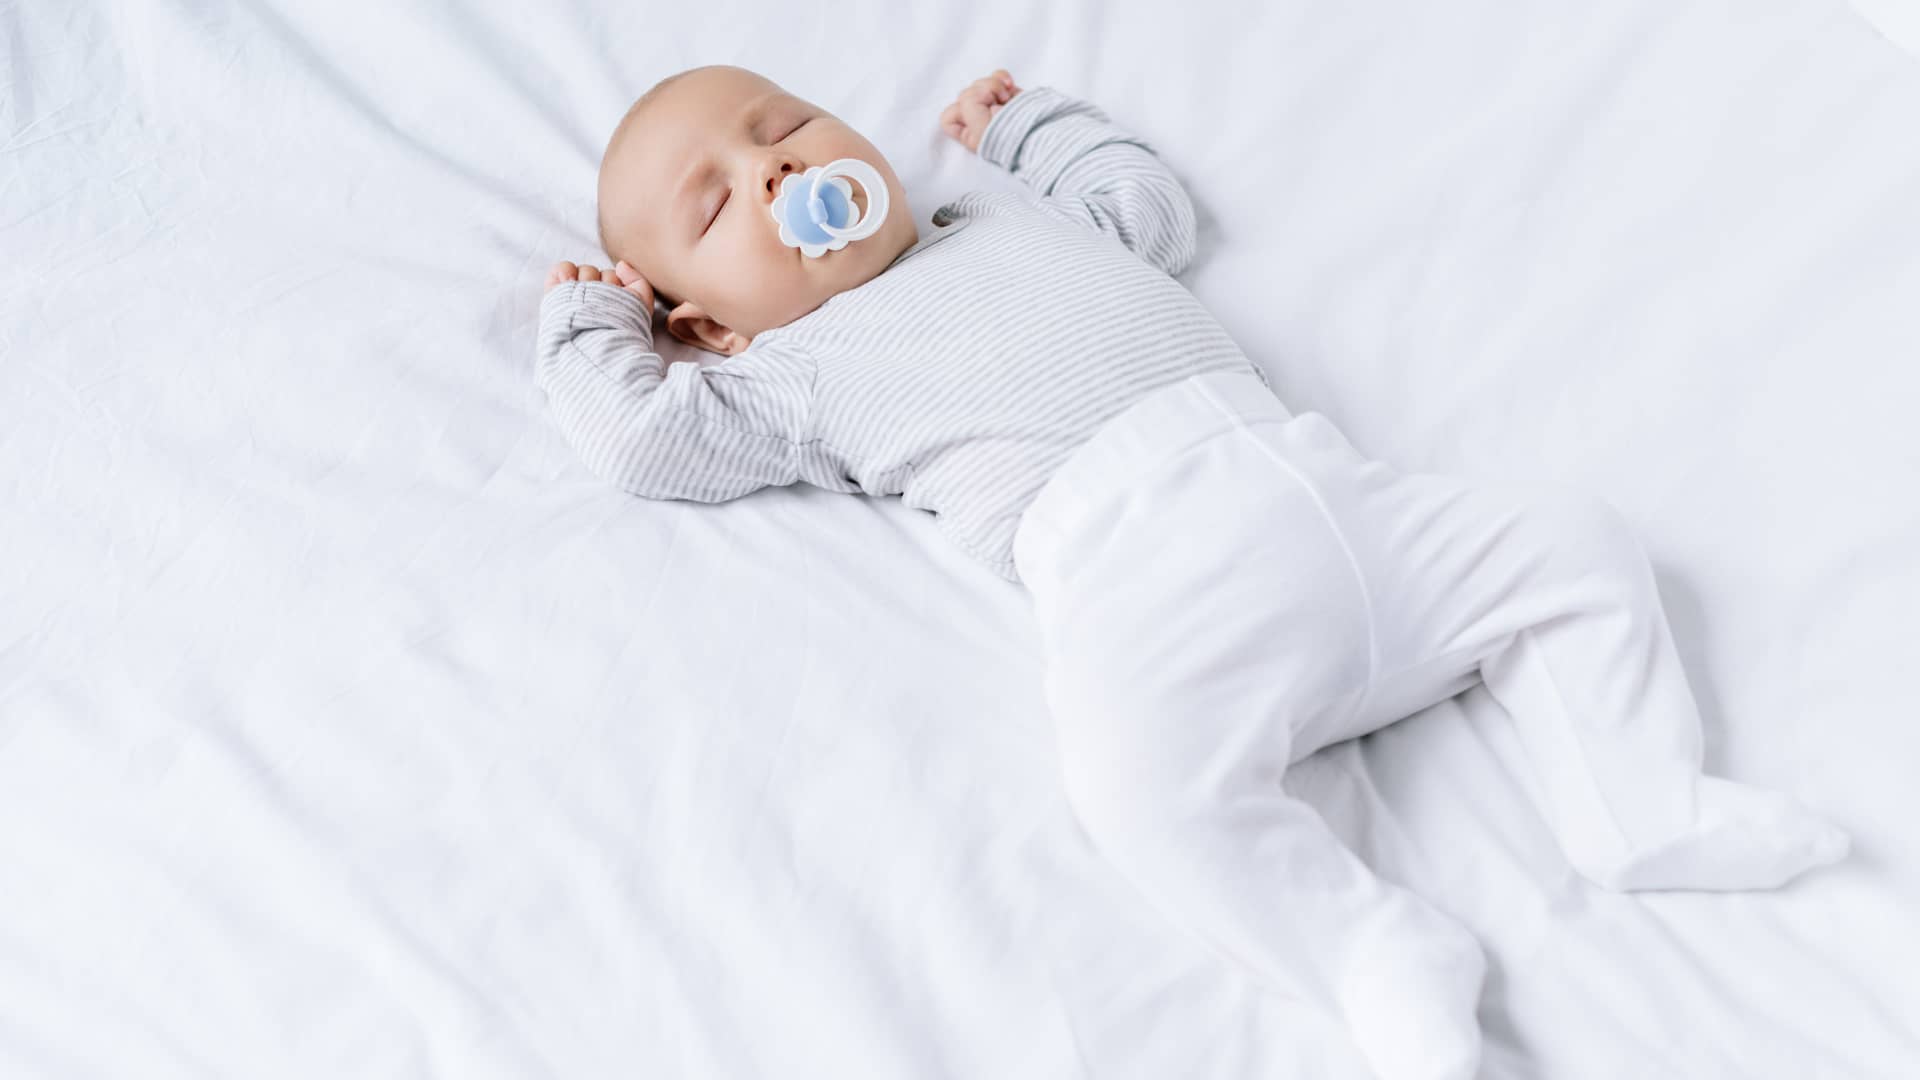 Dormir al bebé boca abajo aumenta el riesgo de muerte súbita